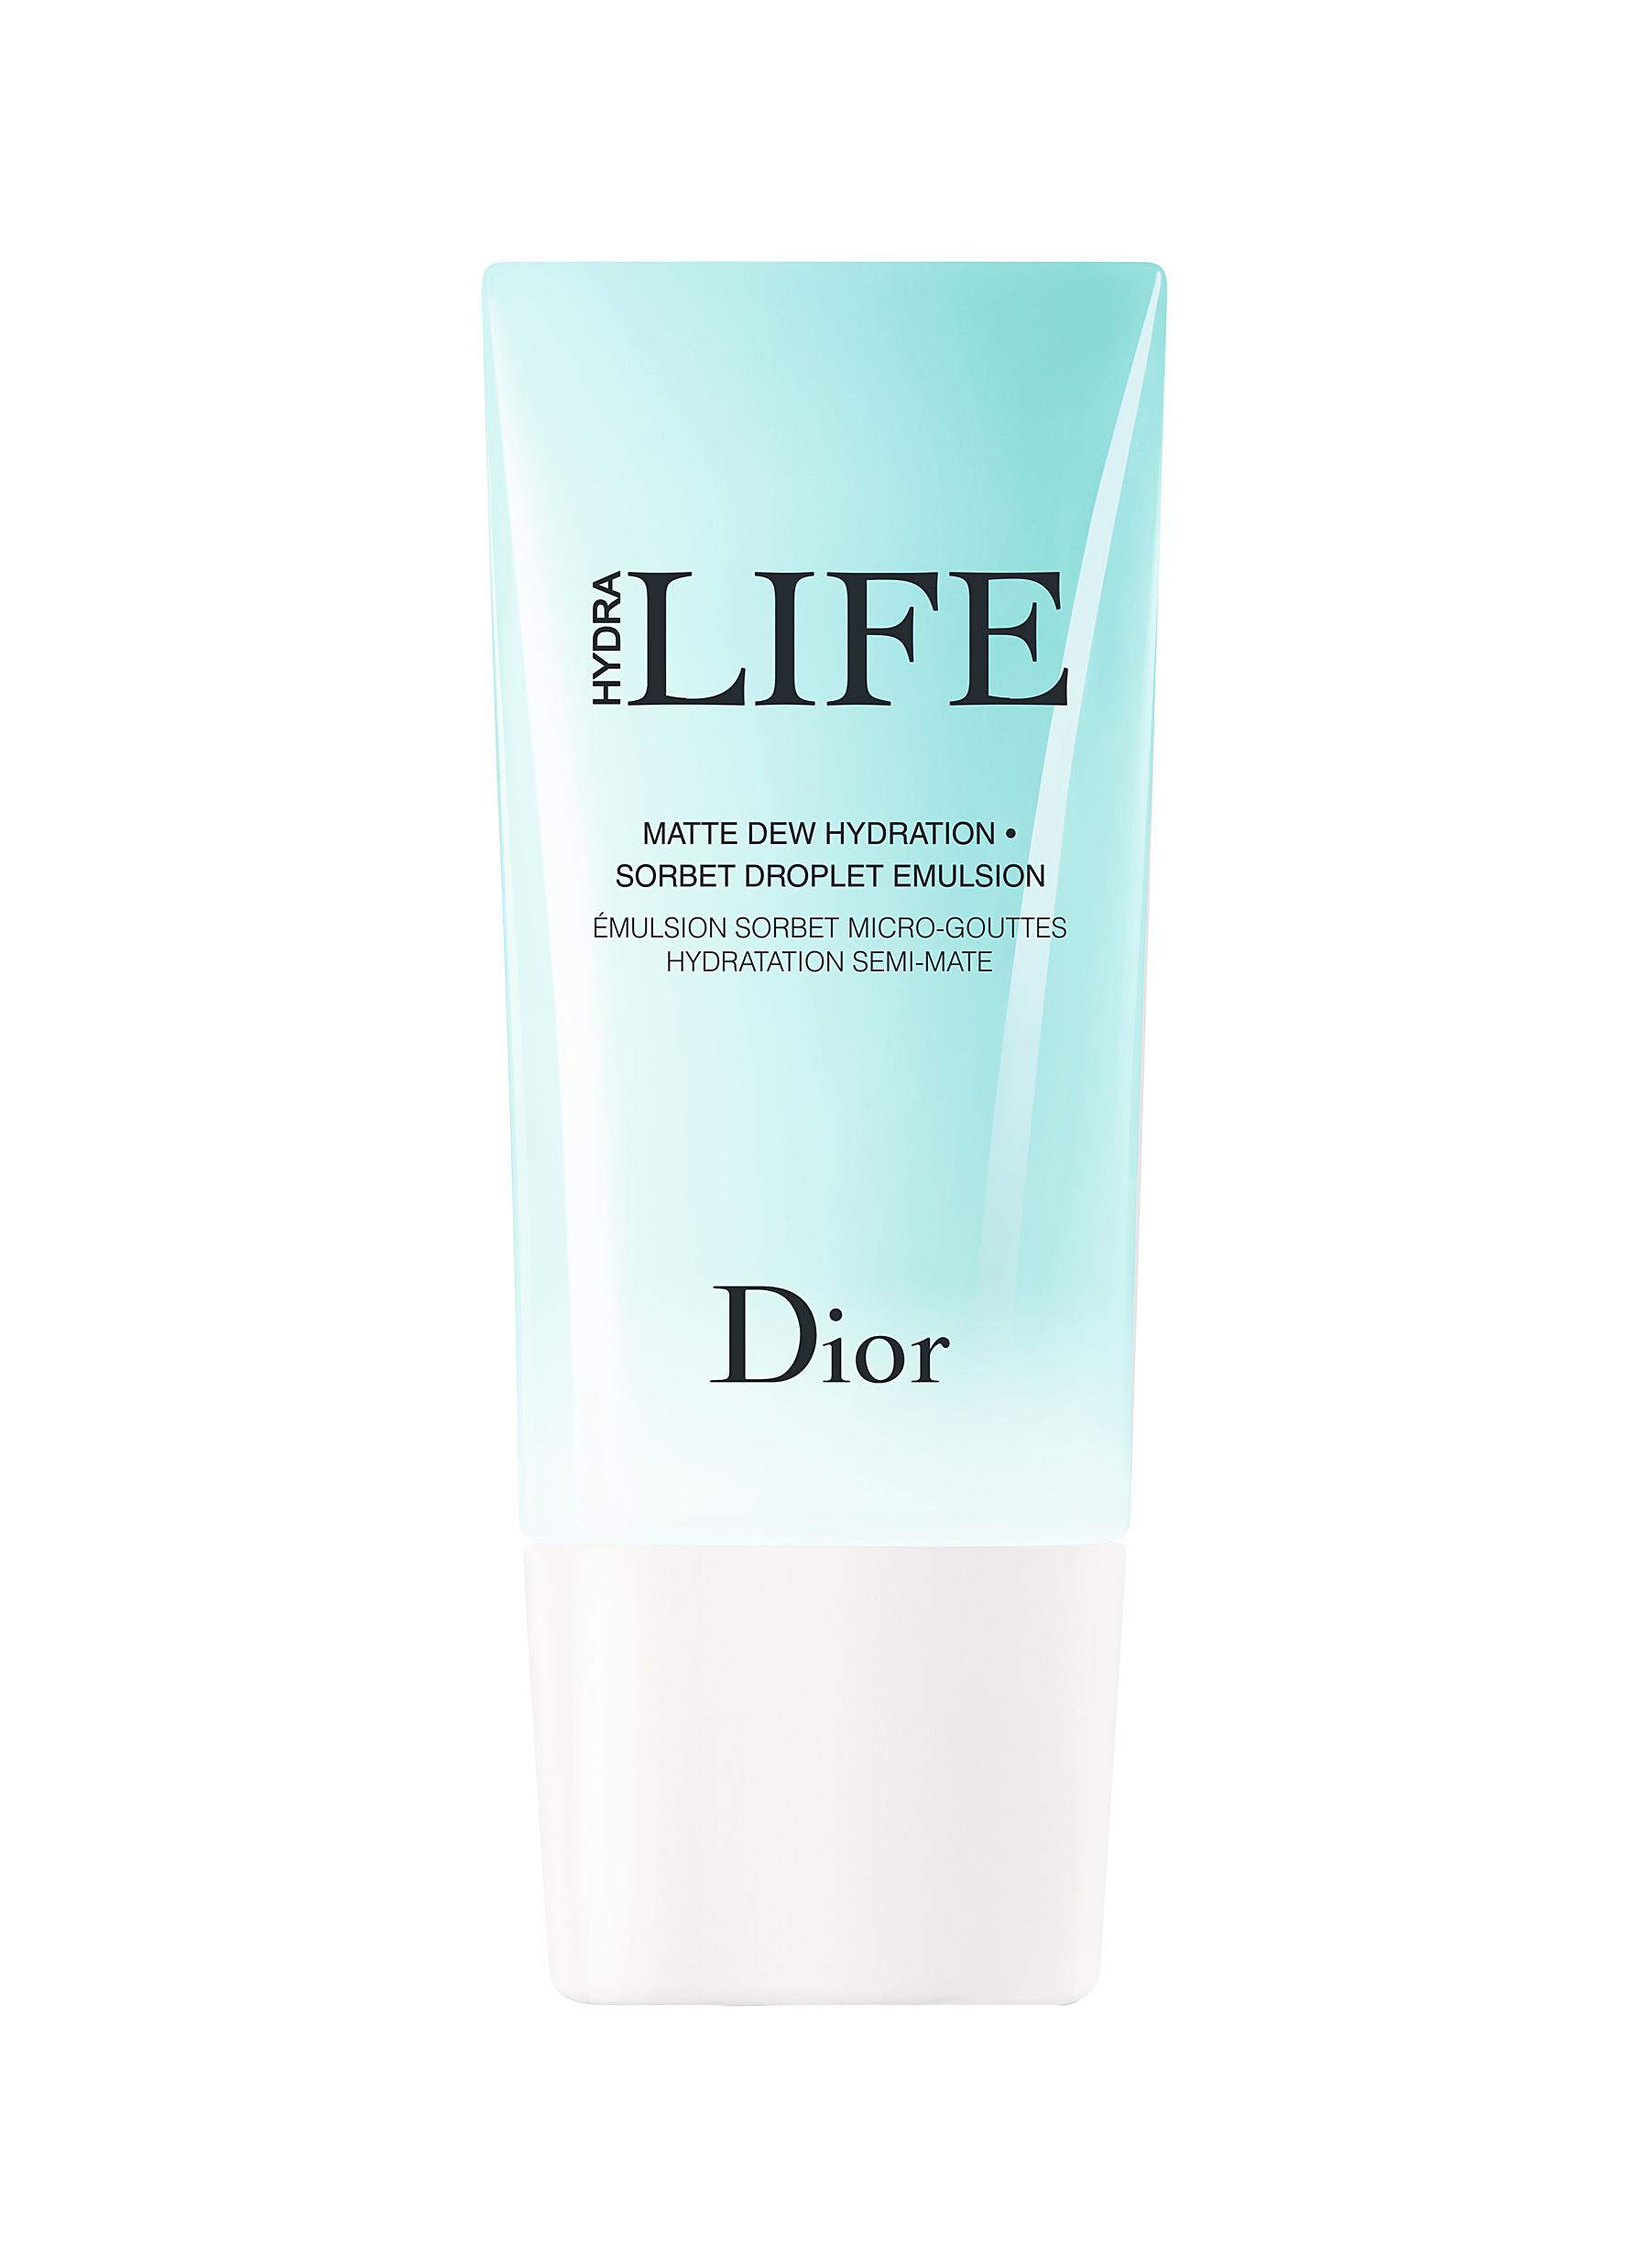 Dior life hydra matte dew hydration как настроить тор браузер и торрент hudra